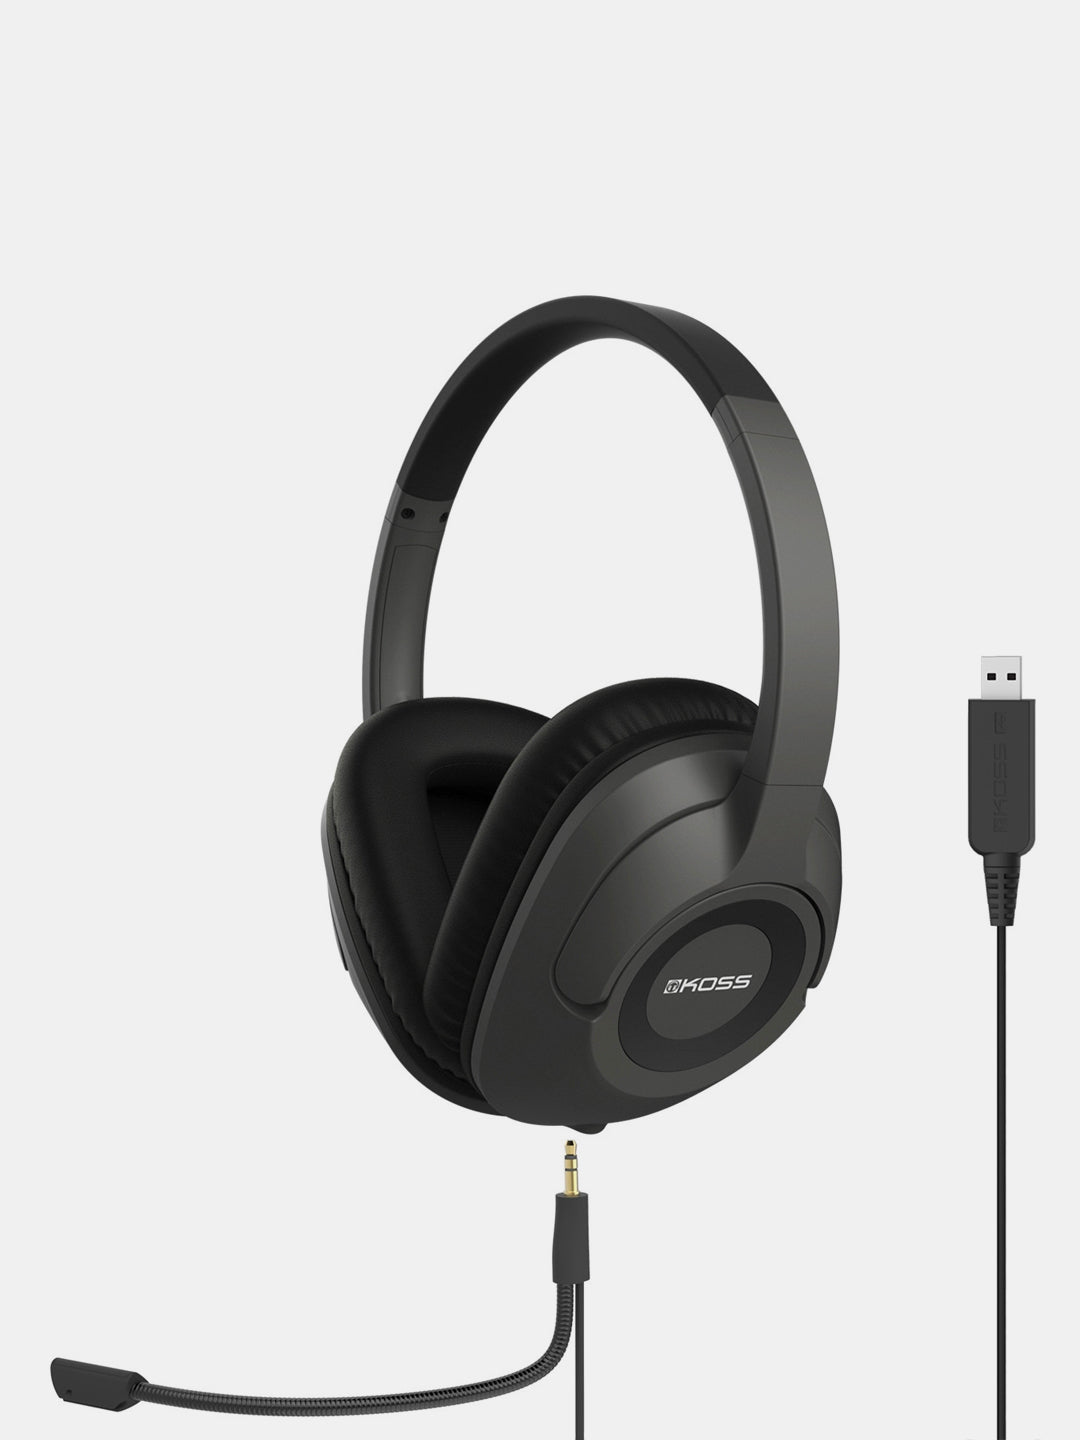 forsikring Andet kaste SB42 USB Communication Headsets - Koss Stereophones